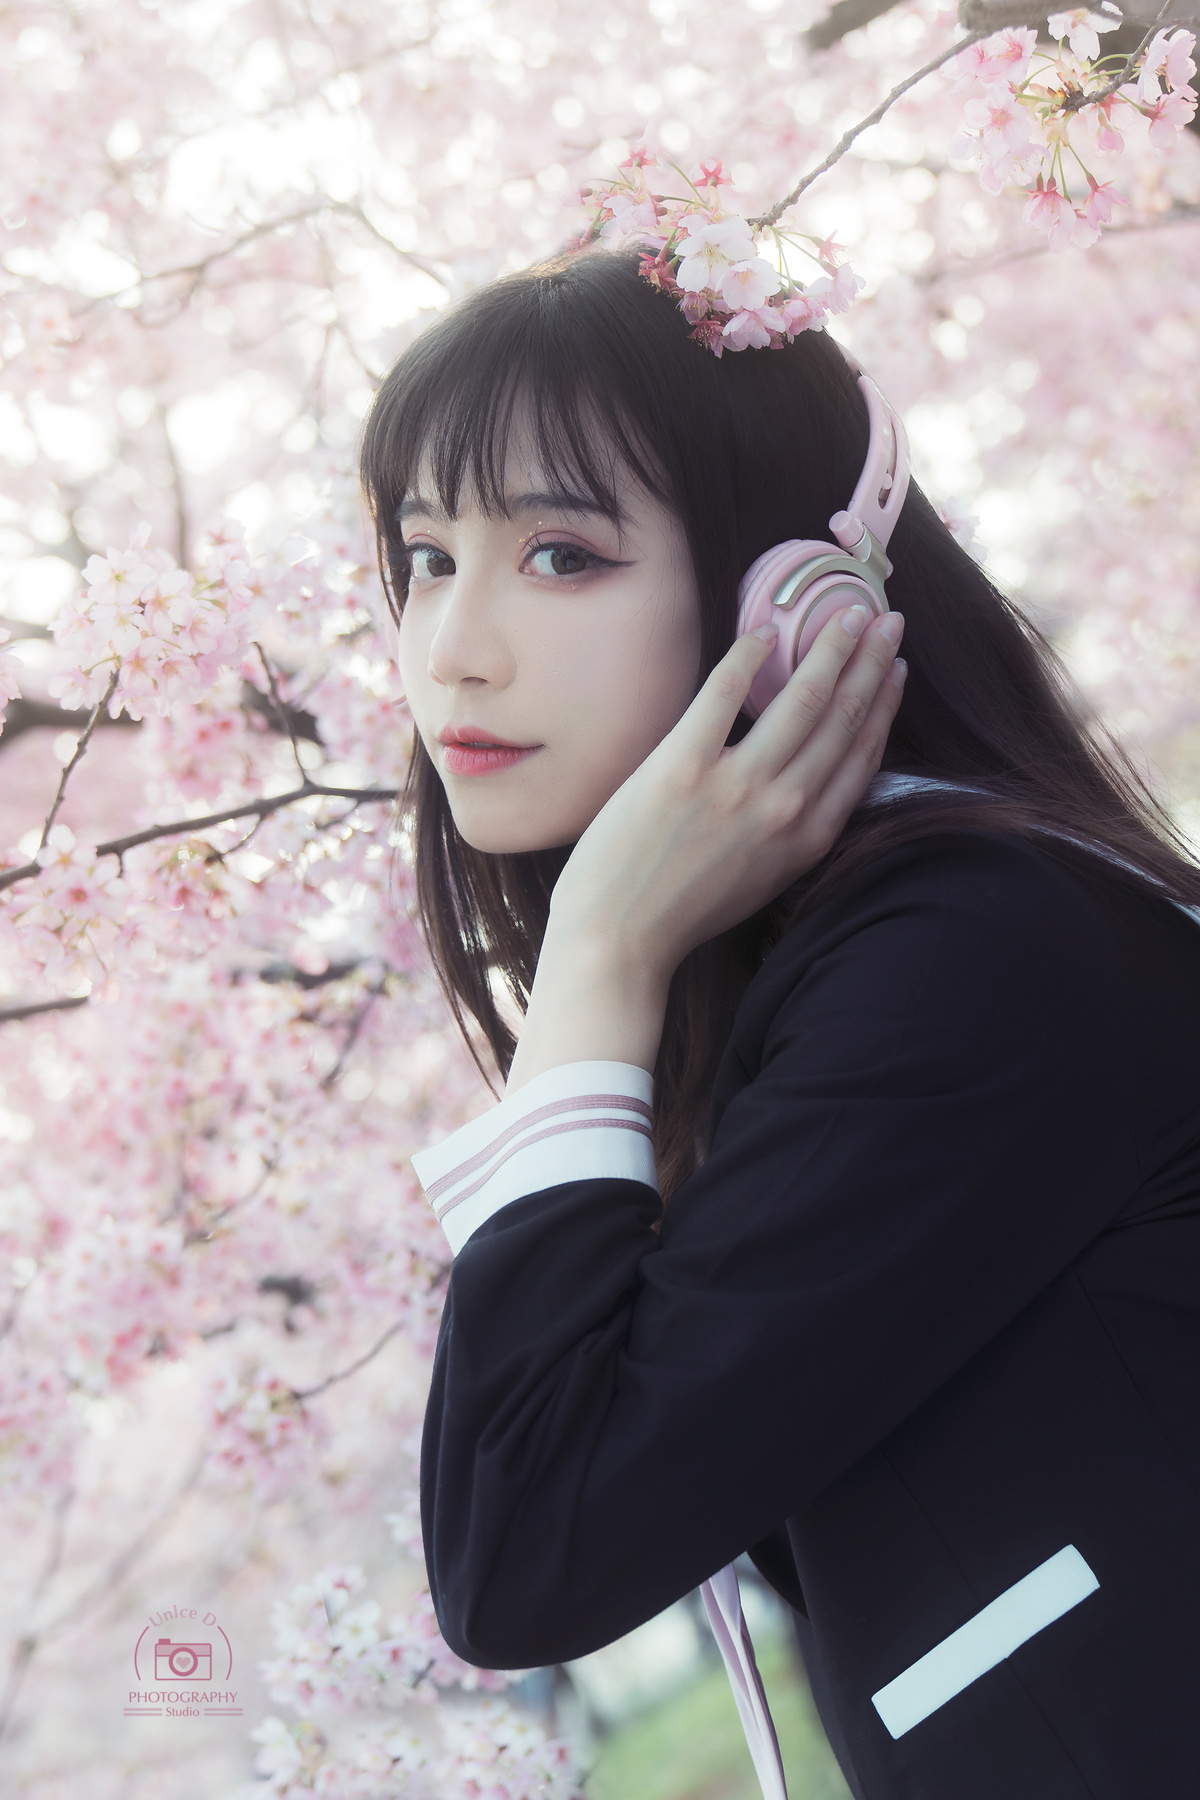 一位年轻女子站在一棵开着粉红色花朵的树下 把手机放在耳边